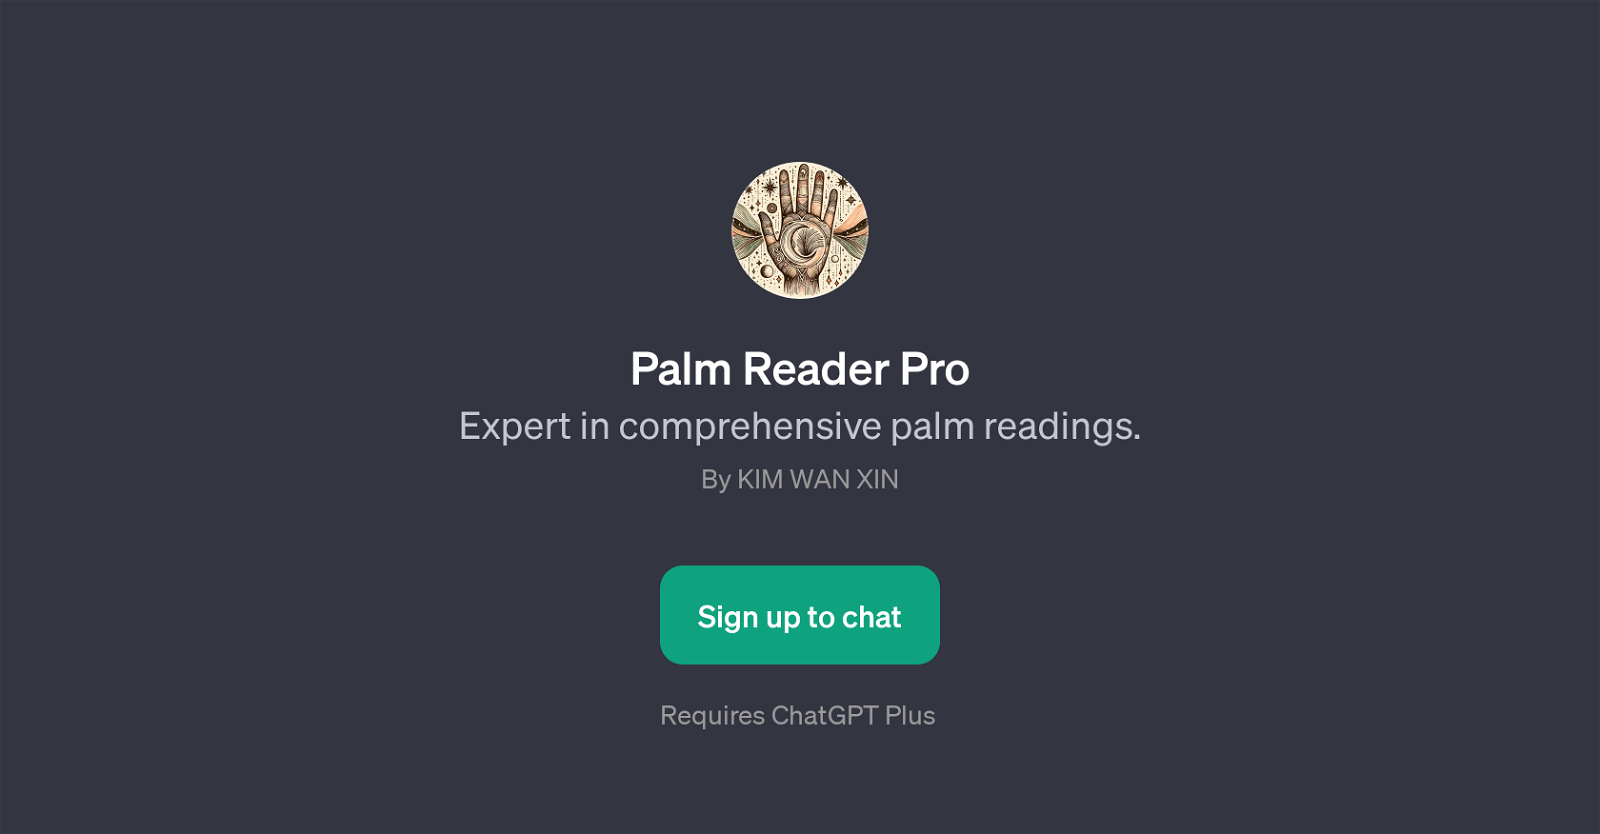 Palm Reader Pro website